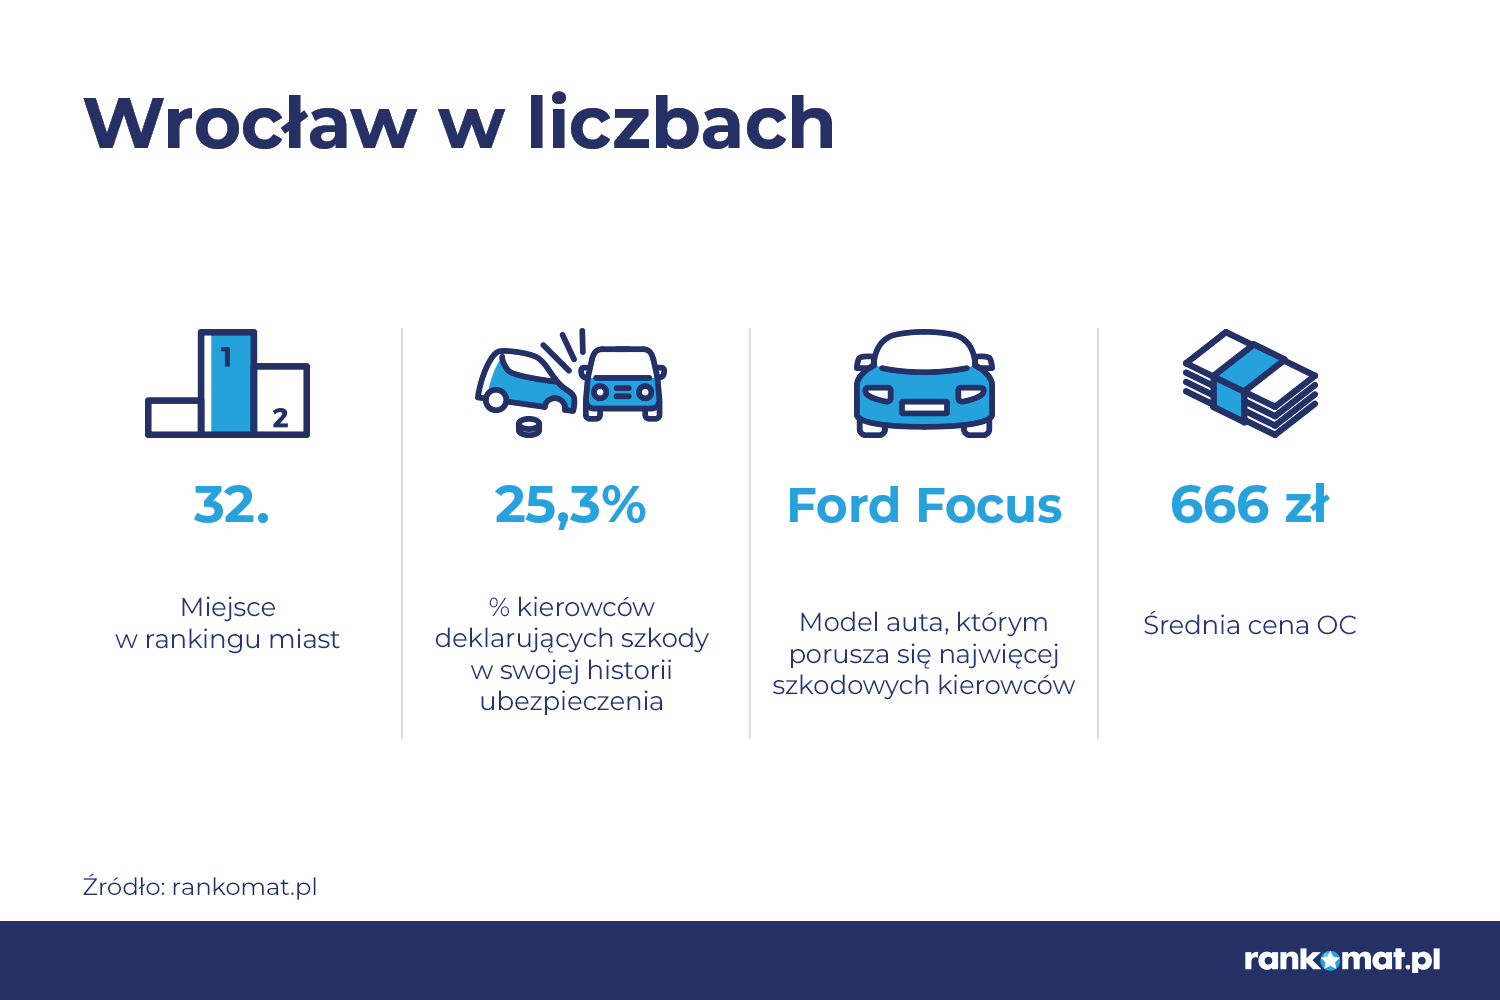 Wrocław 32. na liście miast, po których porusza się najwięcej szkodowych kierowców